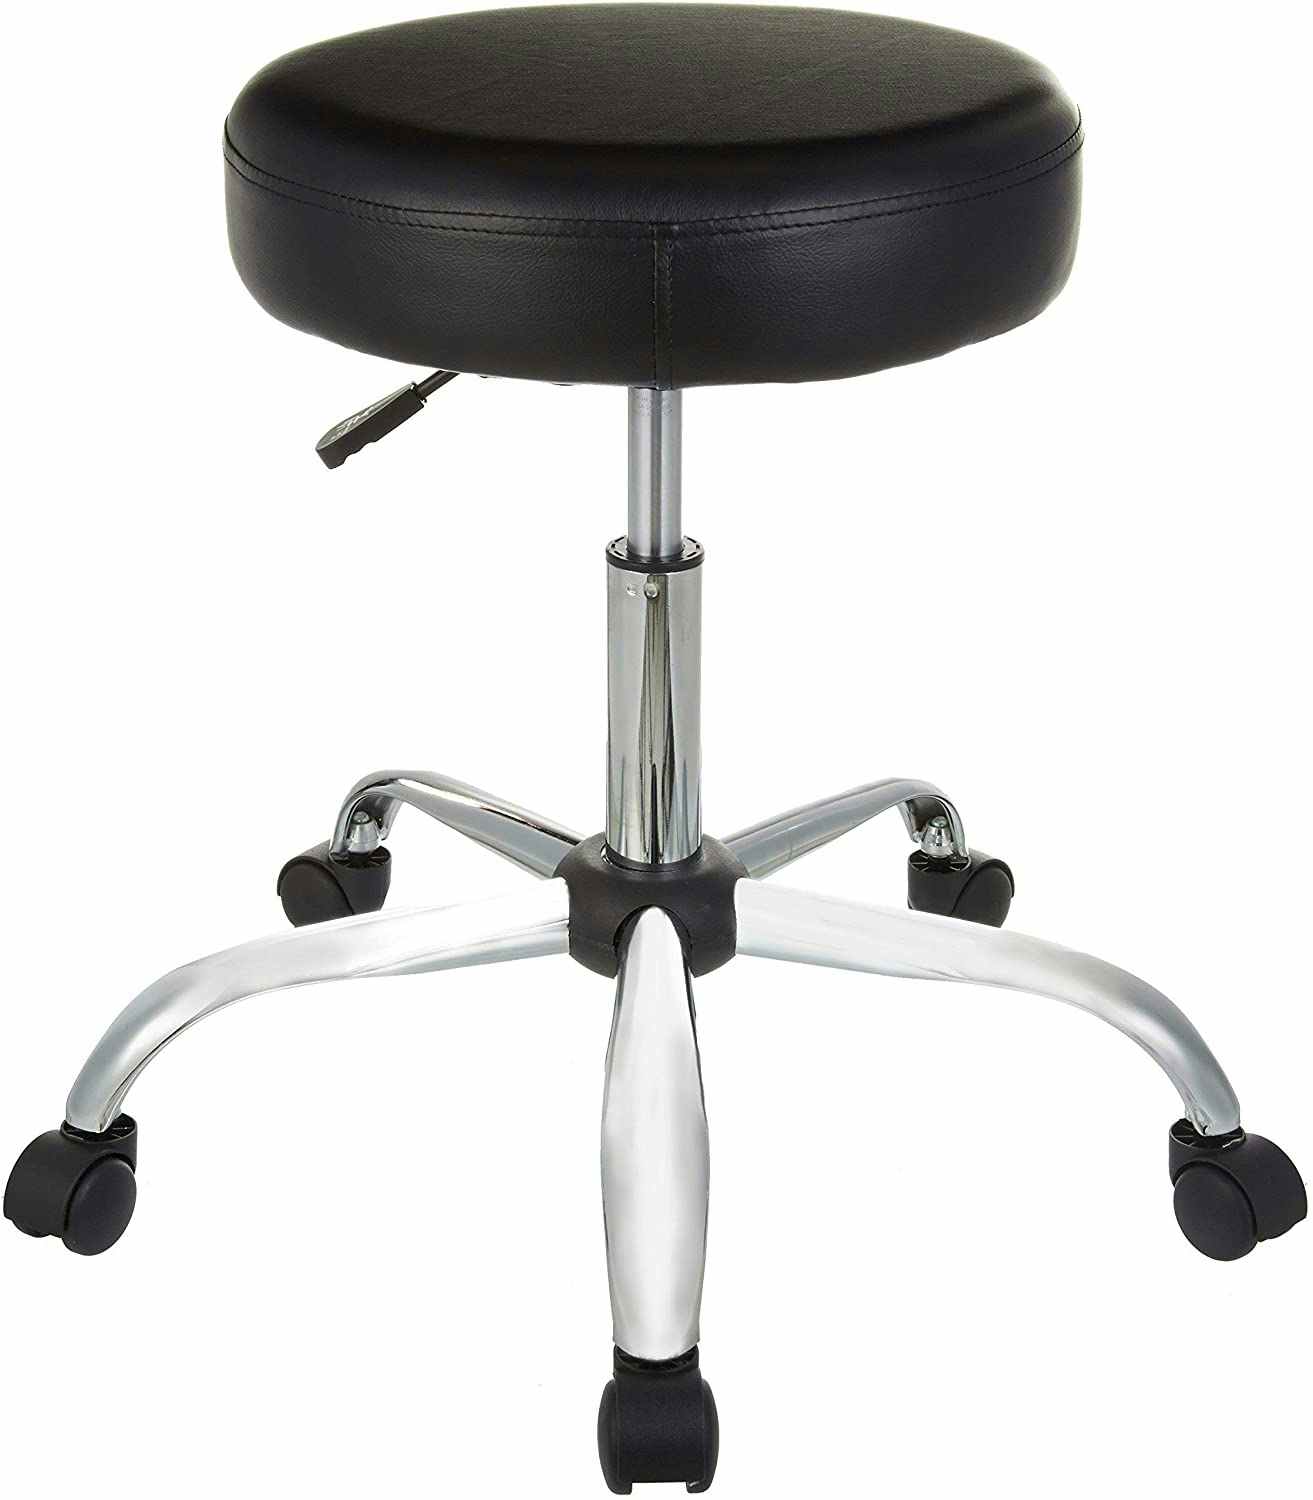 A black Amazon Basics bar stool.